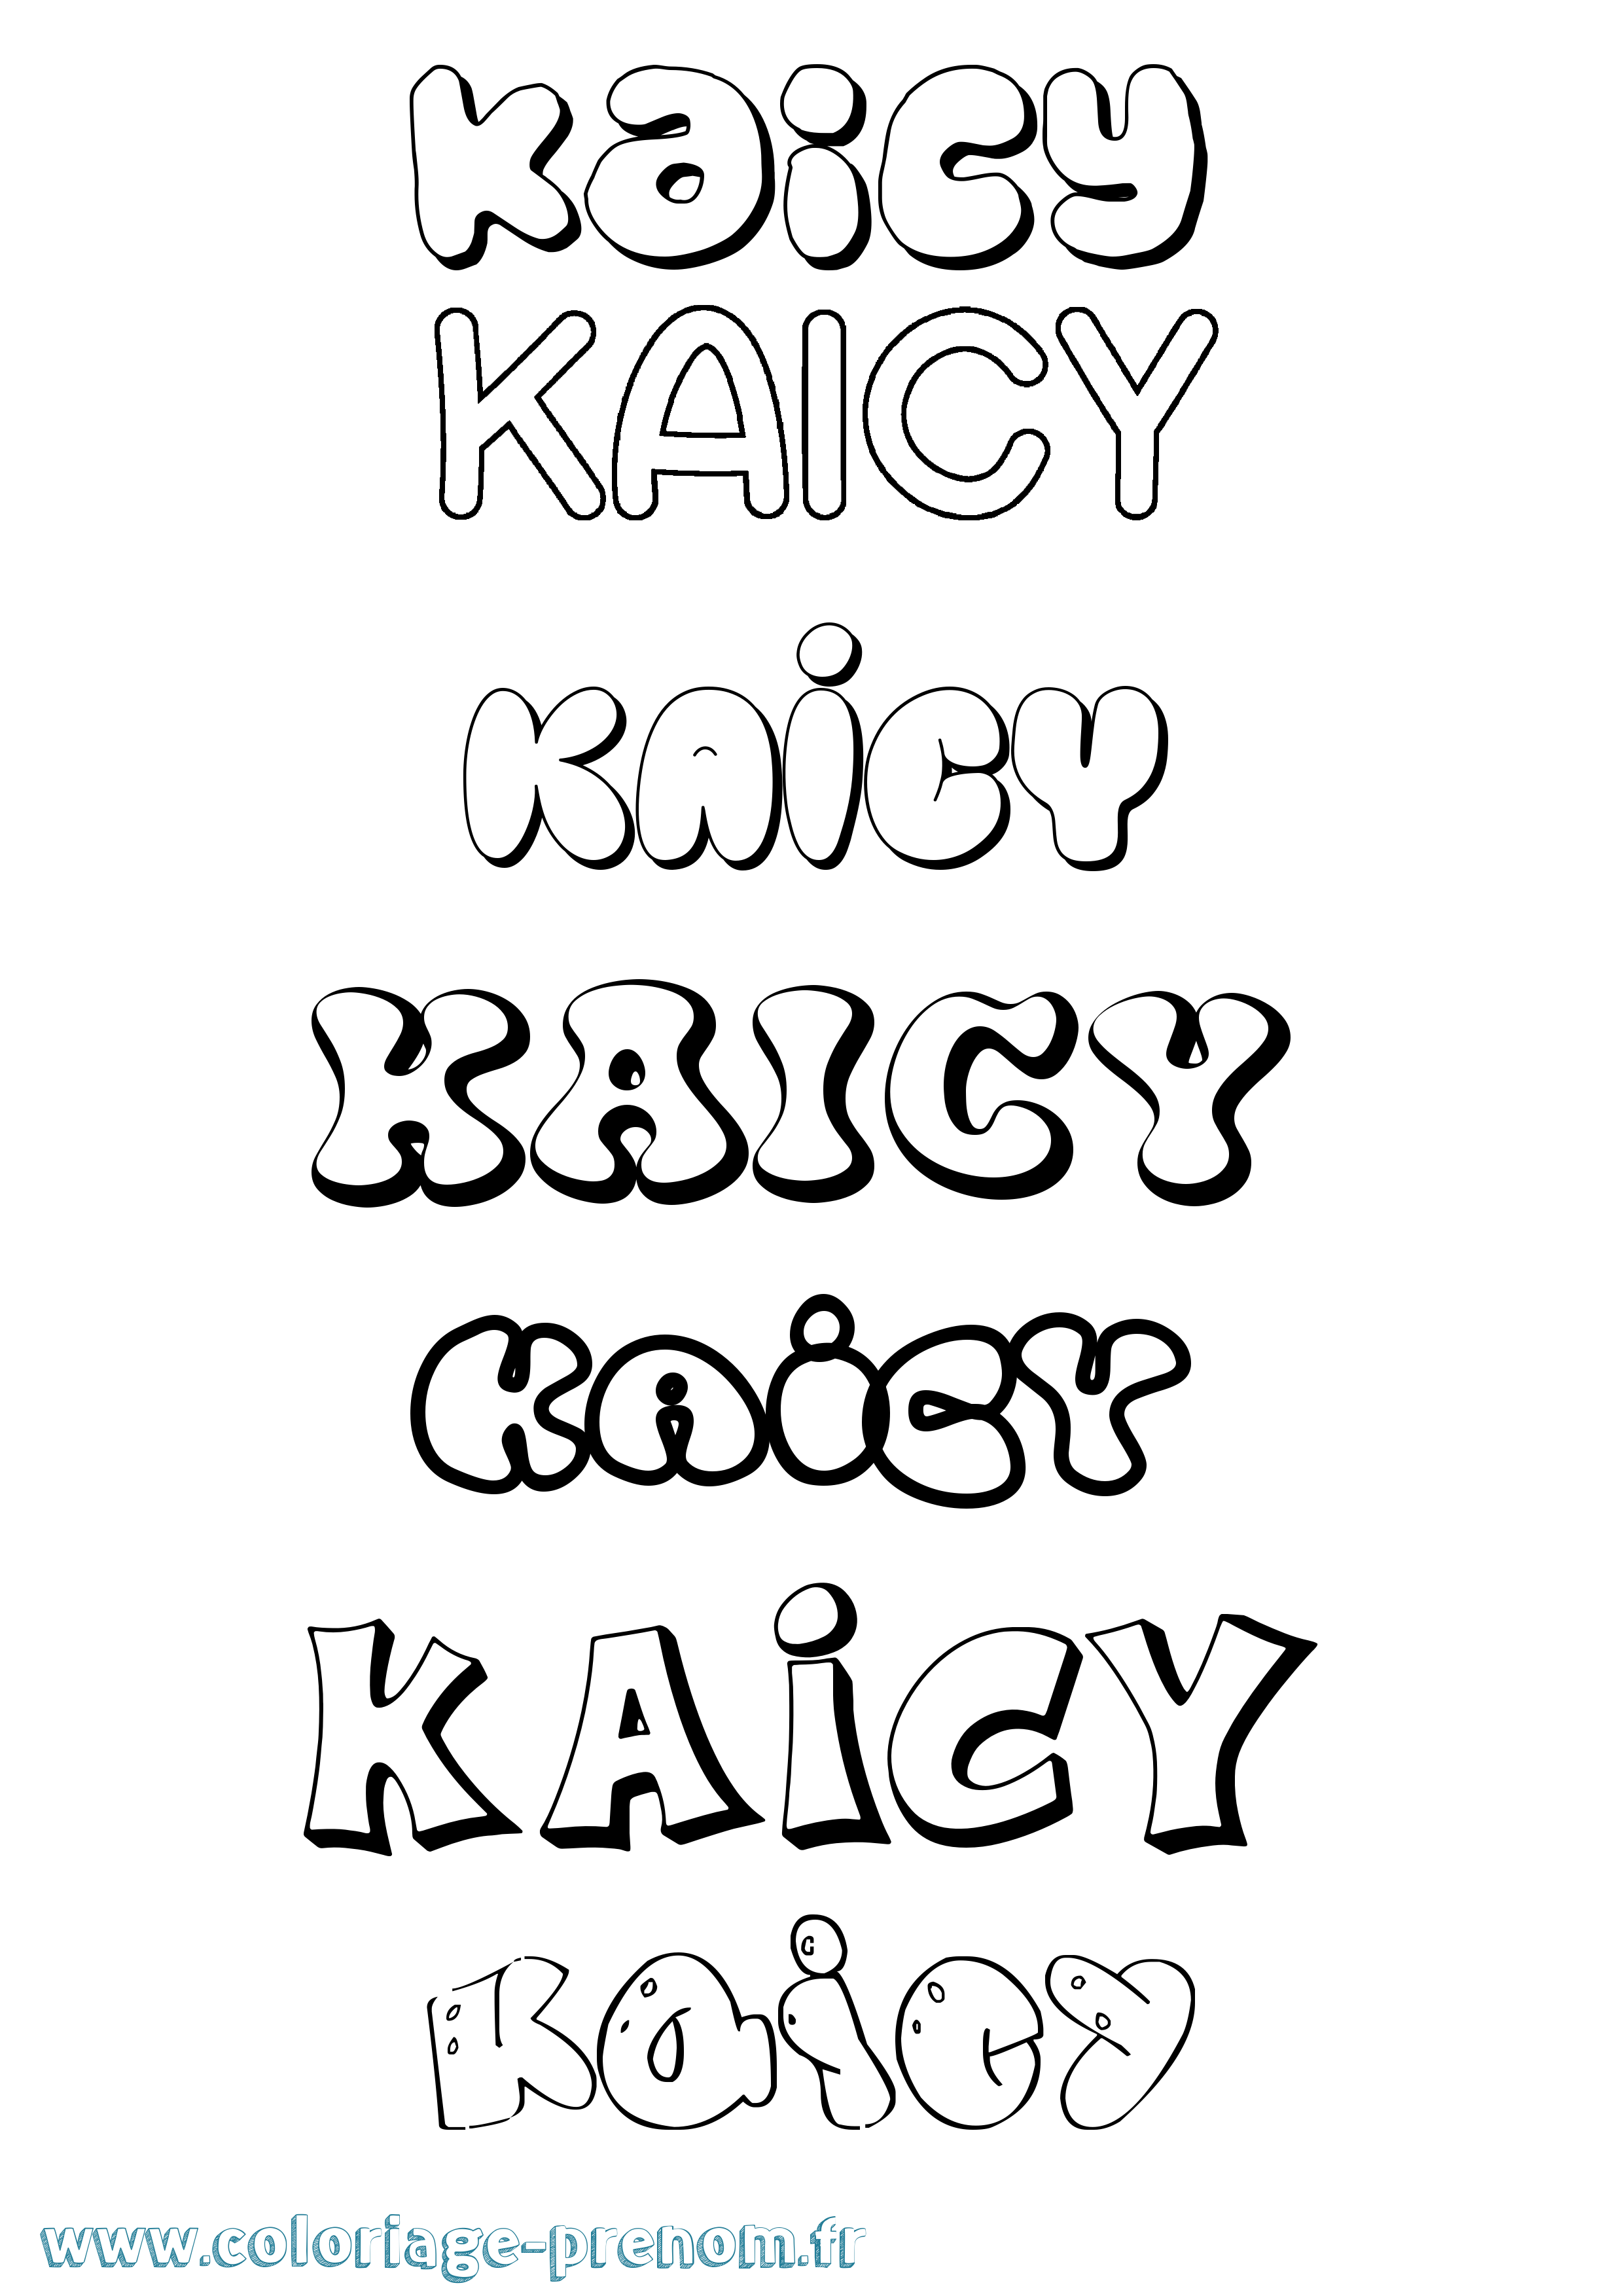 Coloriage prénom Kaicy Bubble